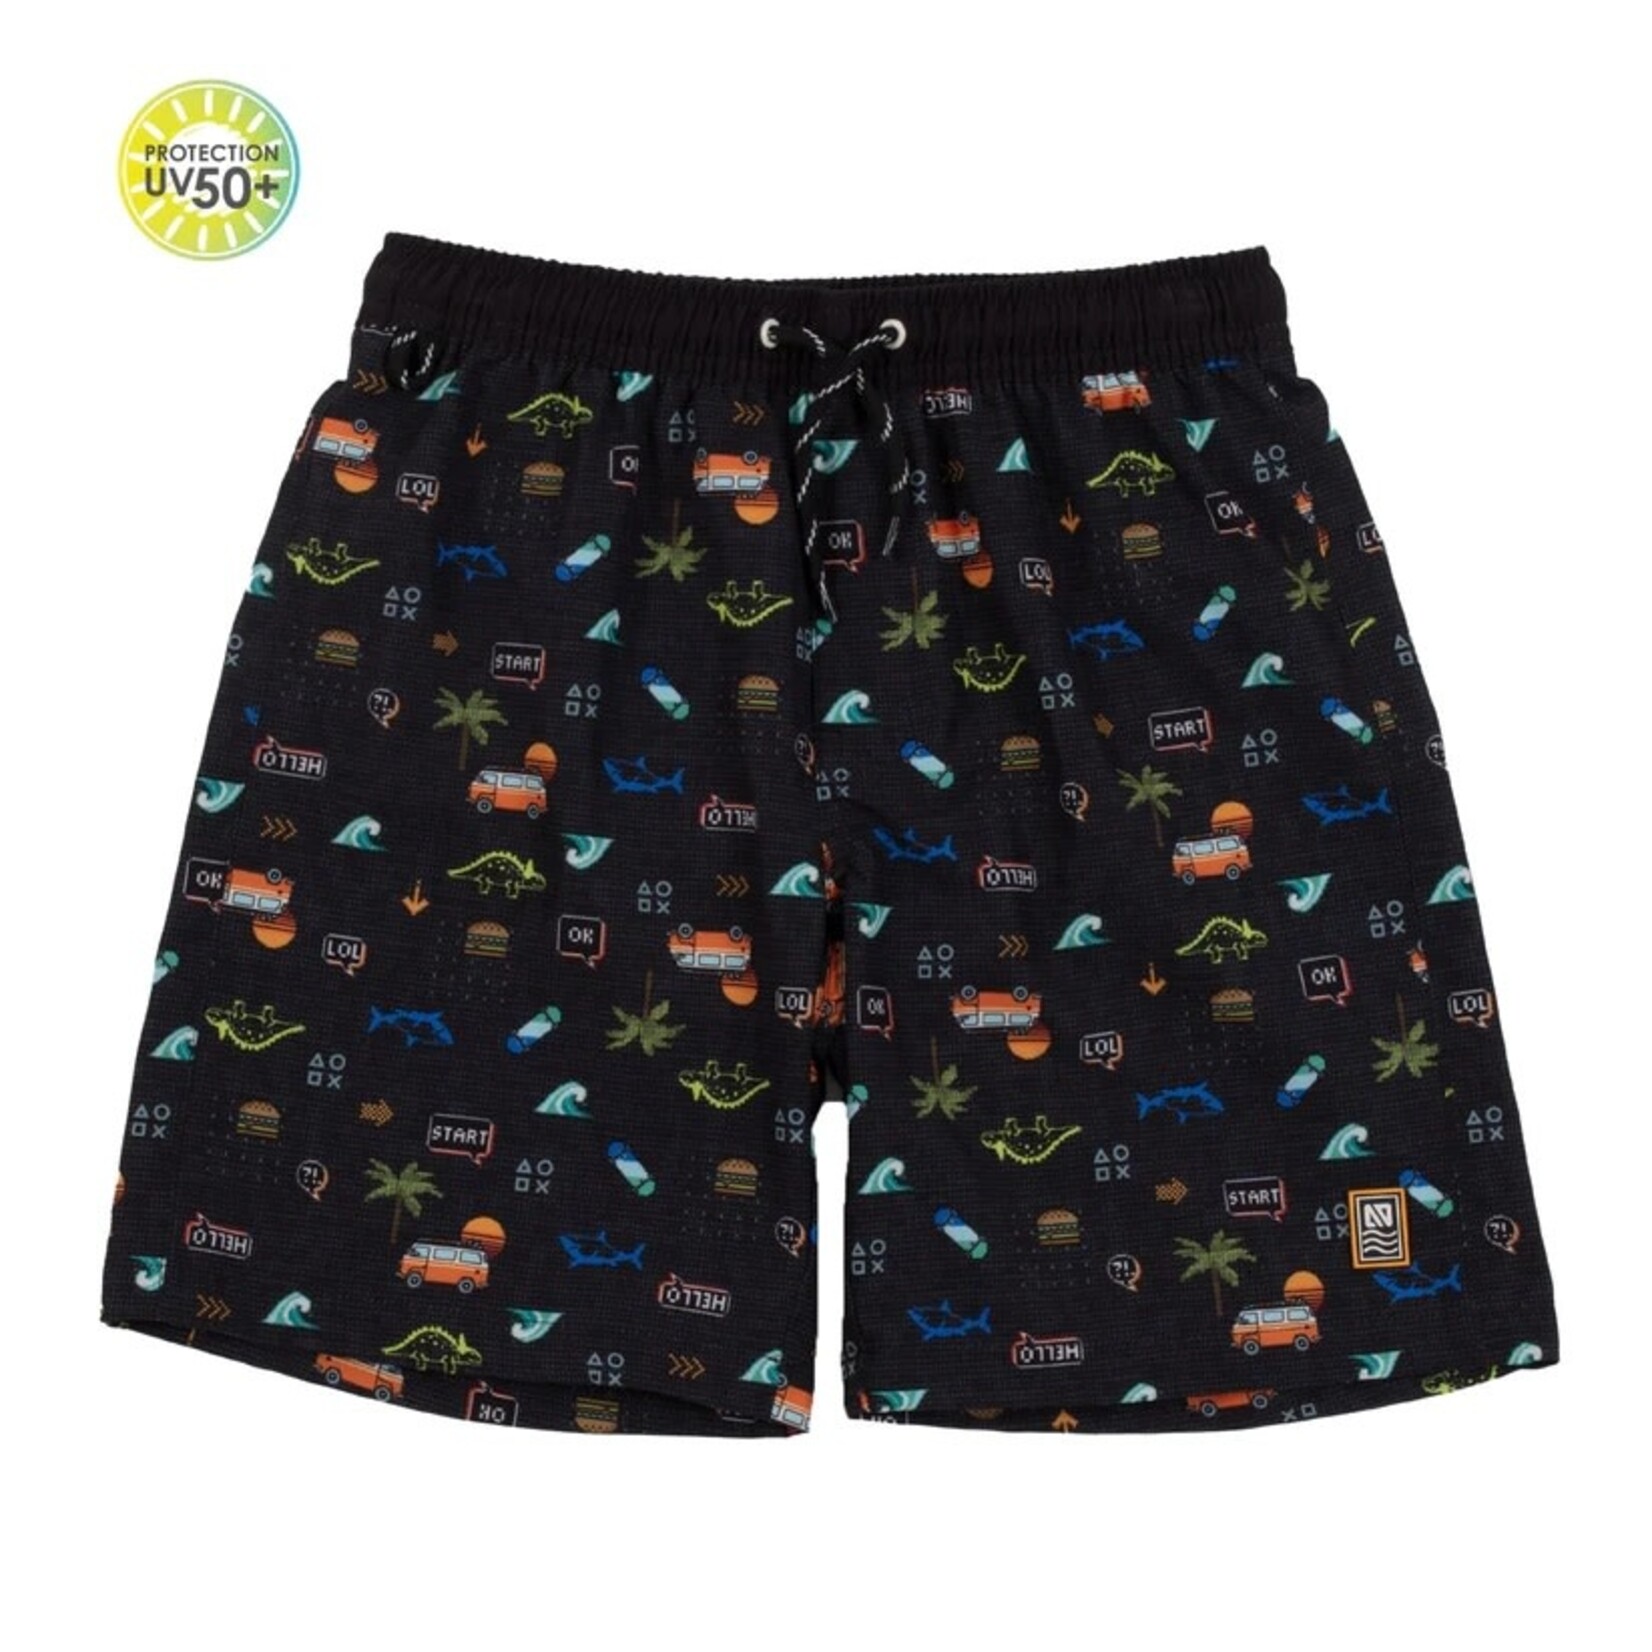 Nanö NANÖ - Black swimming shorts with van, waves and dinosaur print